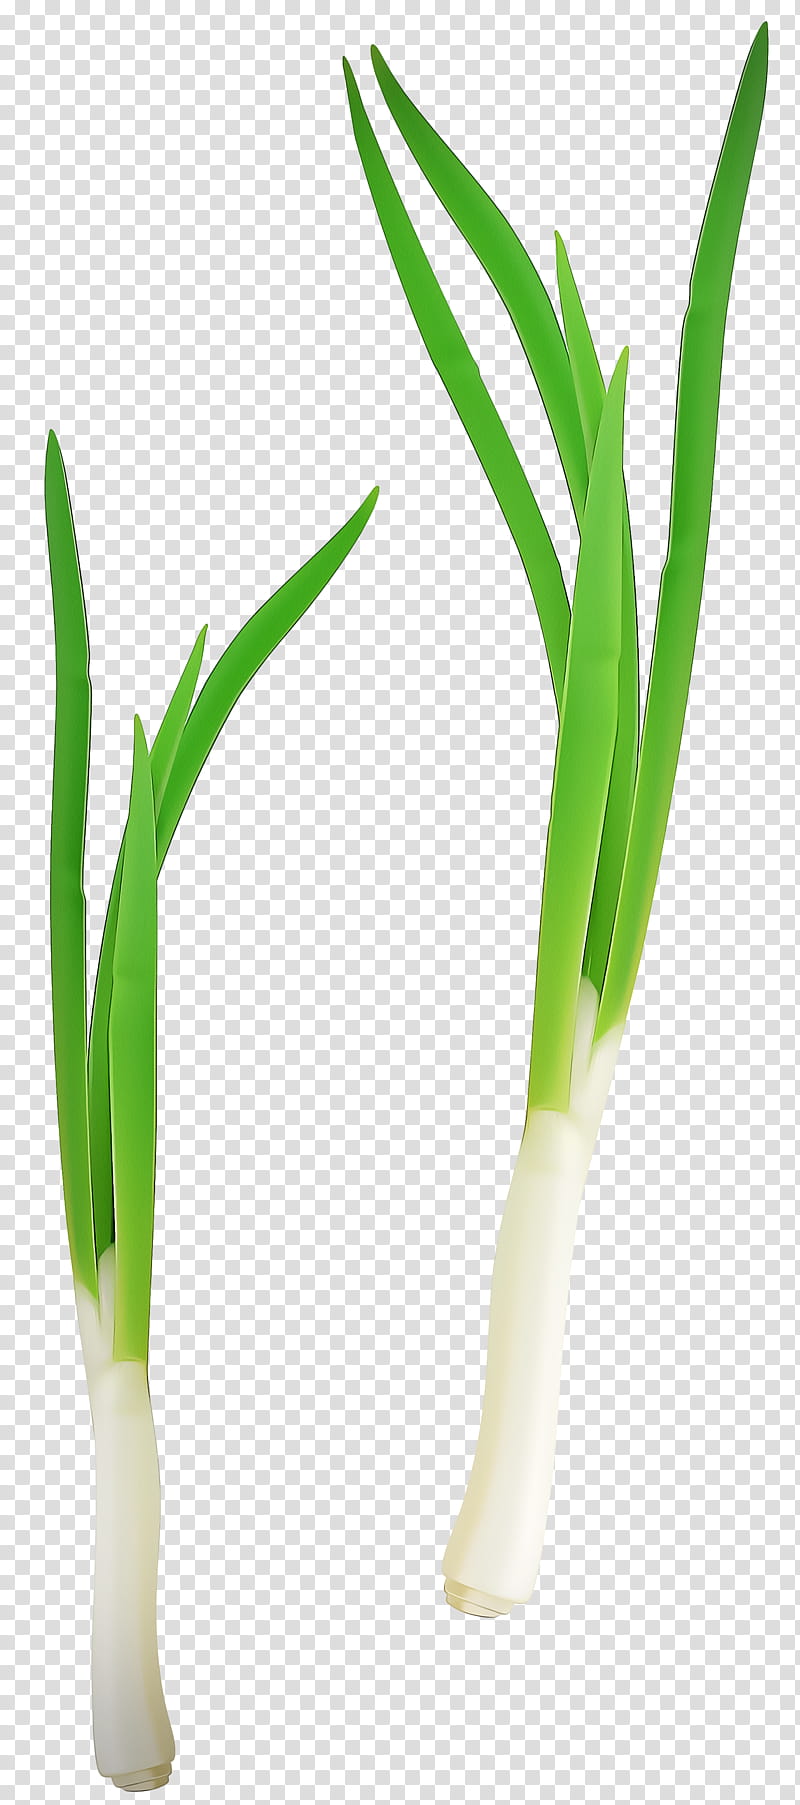 Onion, Welsh Onion, Plant Stem, Grasses, Plants, Onions, Leek, Vegetable transparent background PNG clipart